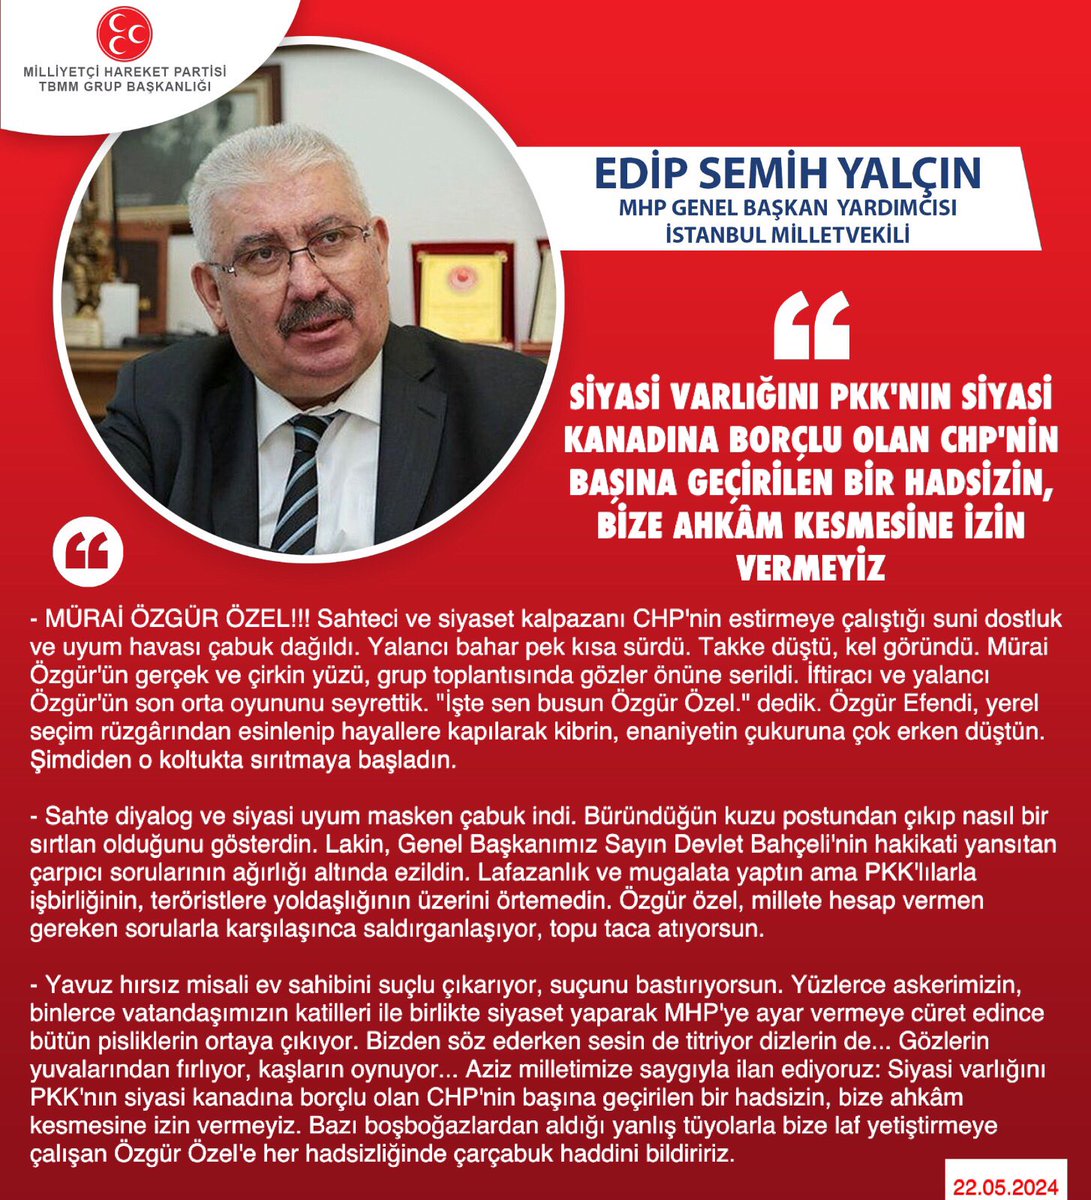 MHP Genel Başkan Yardımcısı ve İstanbul Milletvekilimiz Prof. Dr. E. Semih Yalçın @E_SemihYalcin: Siyasi varlığını PKK'nın siyasi kanadına borçlu olan CHP'nin başına geçirilen bir hadsizin, bize ahkâm kesmesine izin vermeyiz